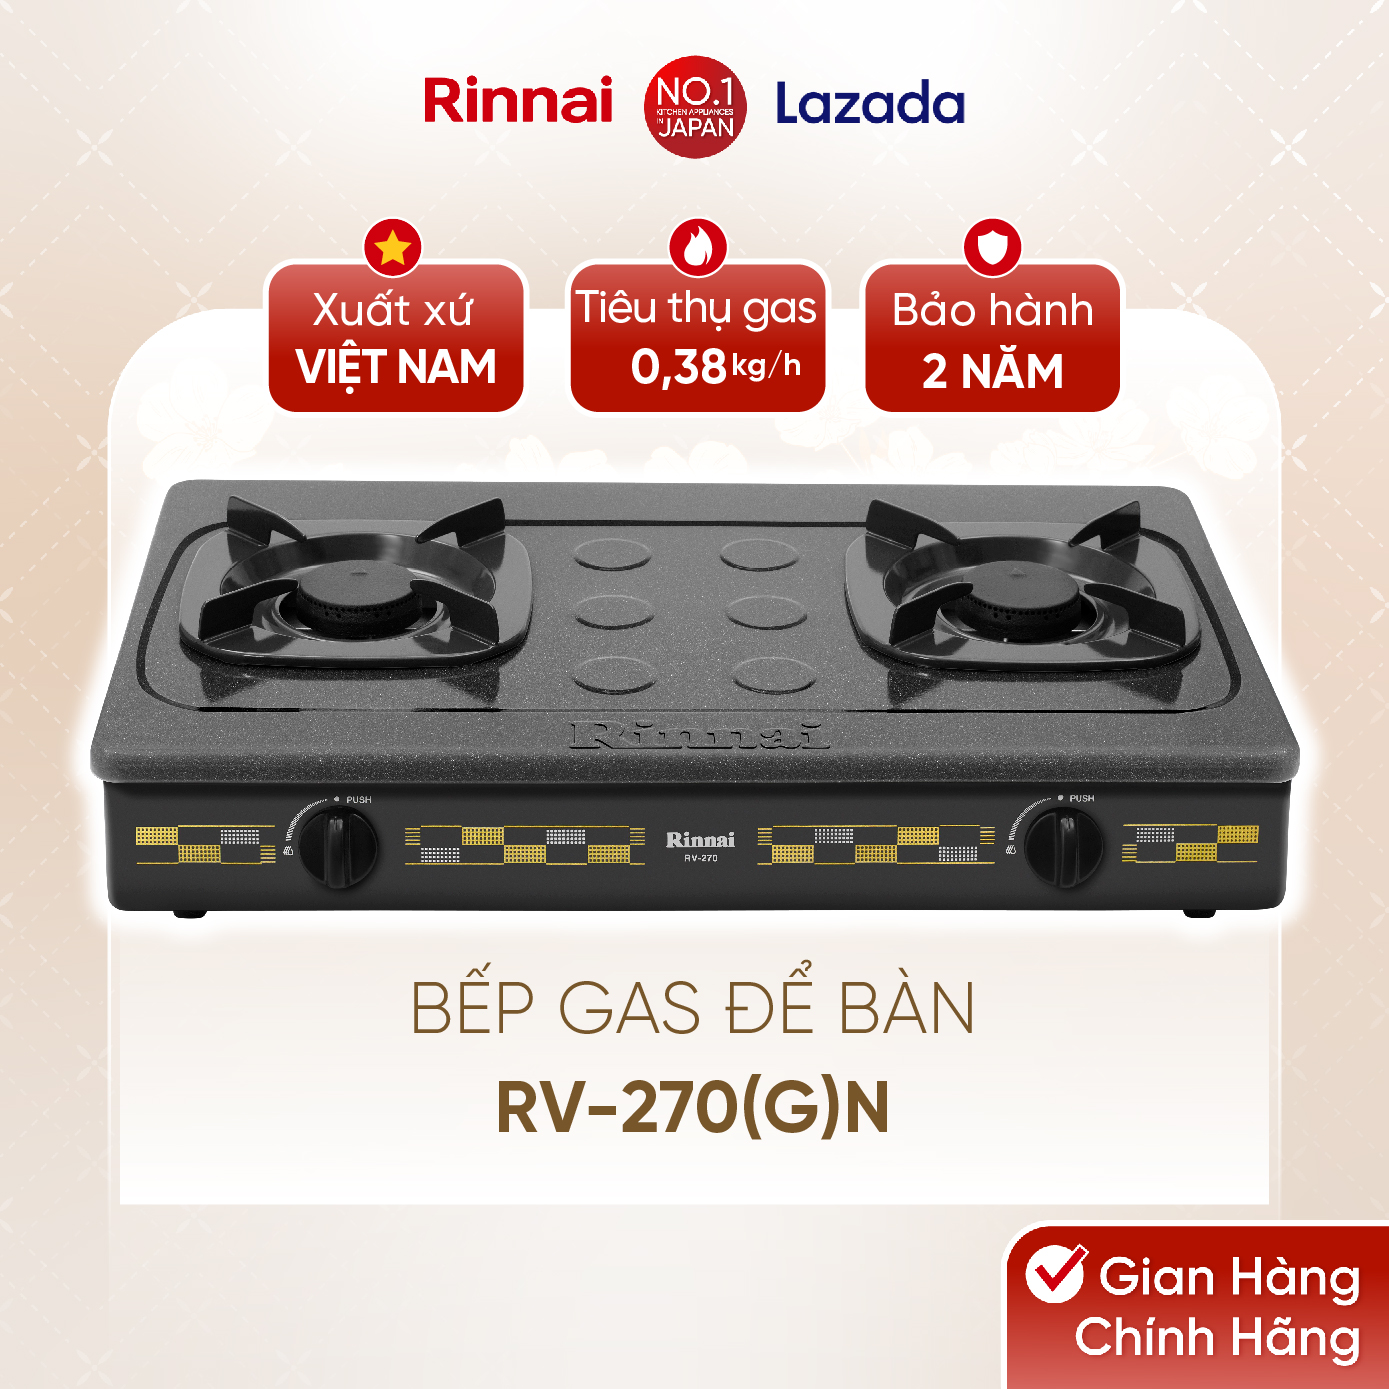 Bếp gas dương Rinnai RV-270(G)N mặt bếp men và kiềng bếp men - Hàng chính hãng.